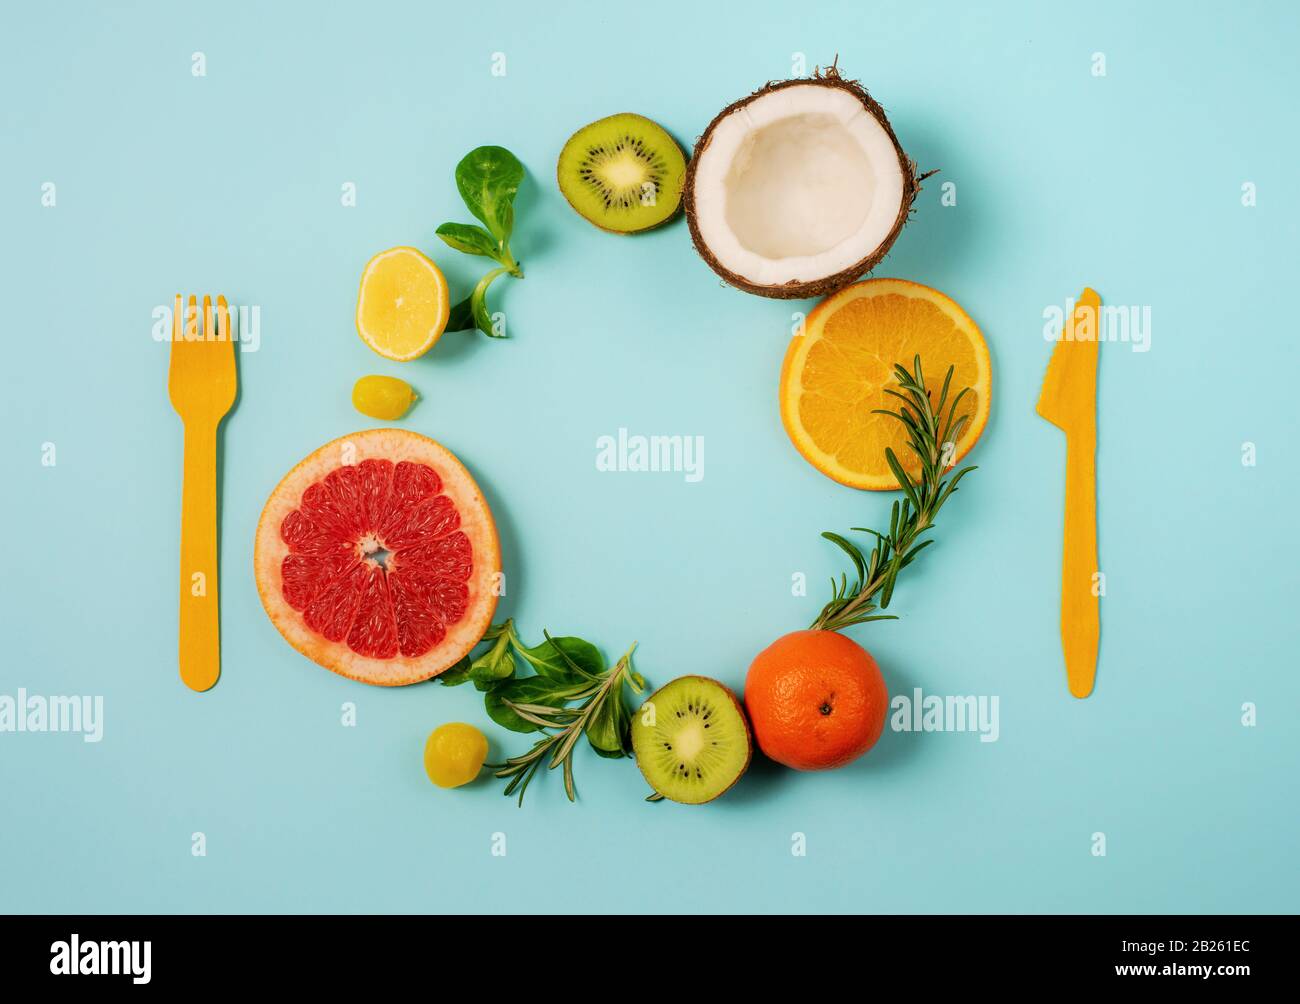 Zusammensetzung von Zitrusfrüchten, Orange und Zitrone, Kokosnuss, Kiwi auf zyanischem Hintergrund Stockfoto